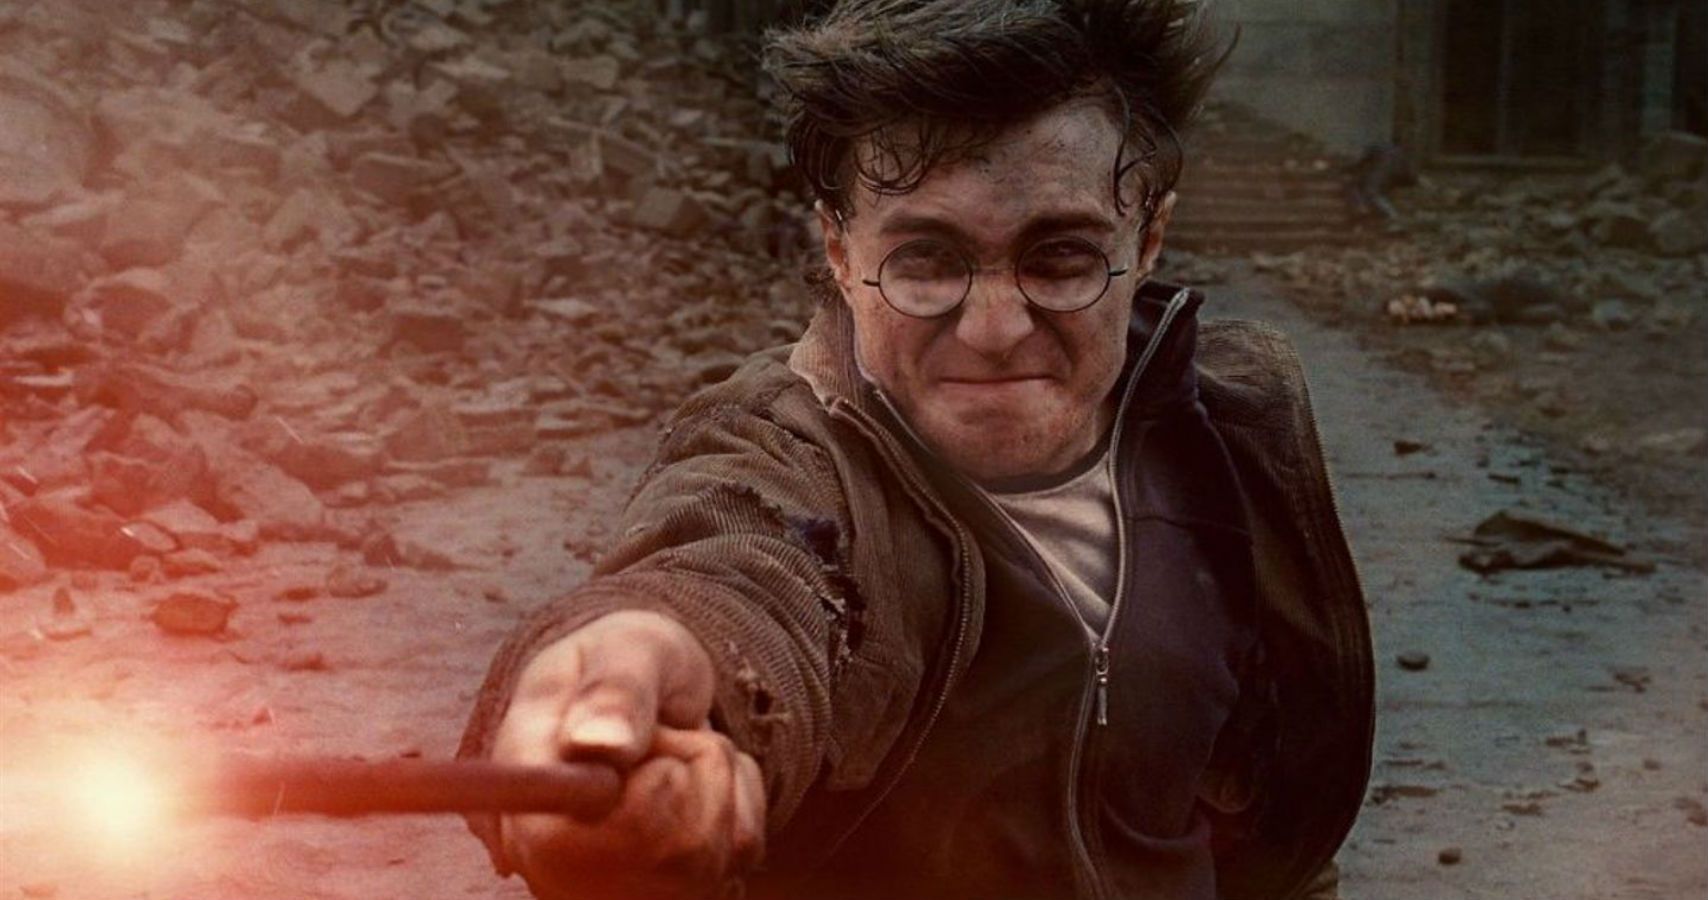 Livros de Harry Potter removidos da biblioteca por medo de conter feitiços "reais"